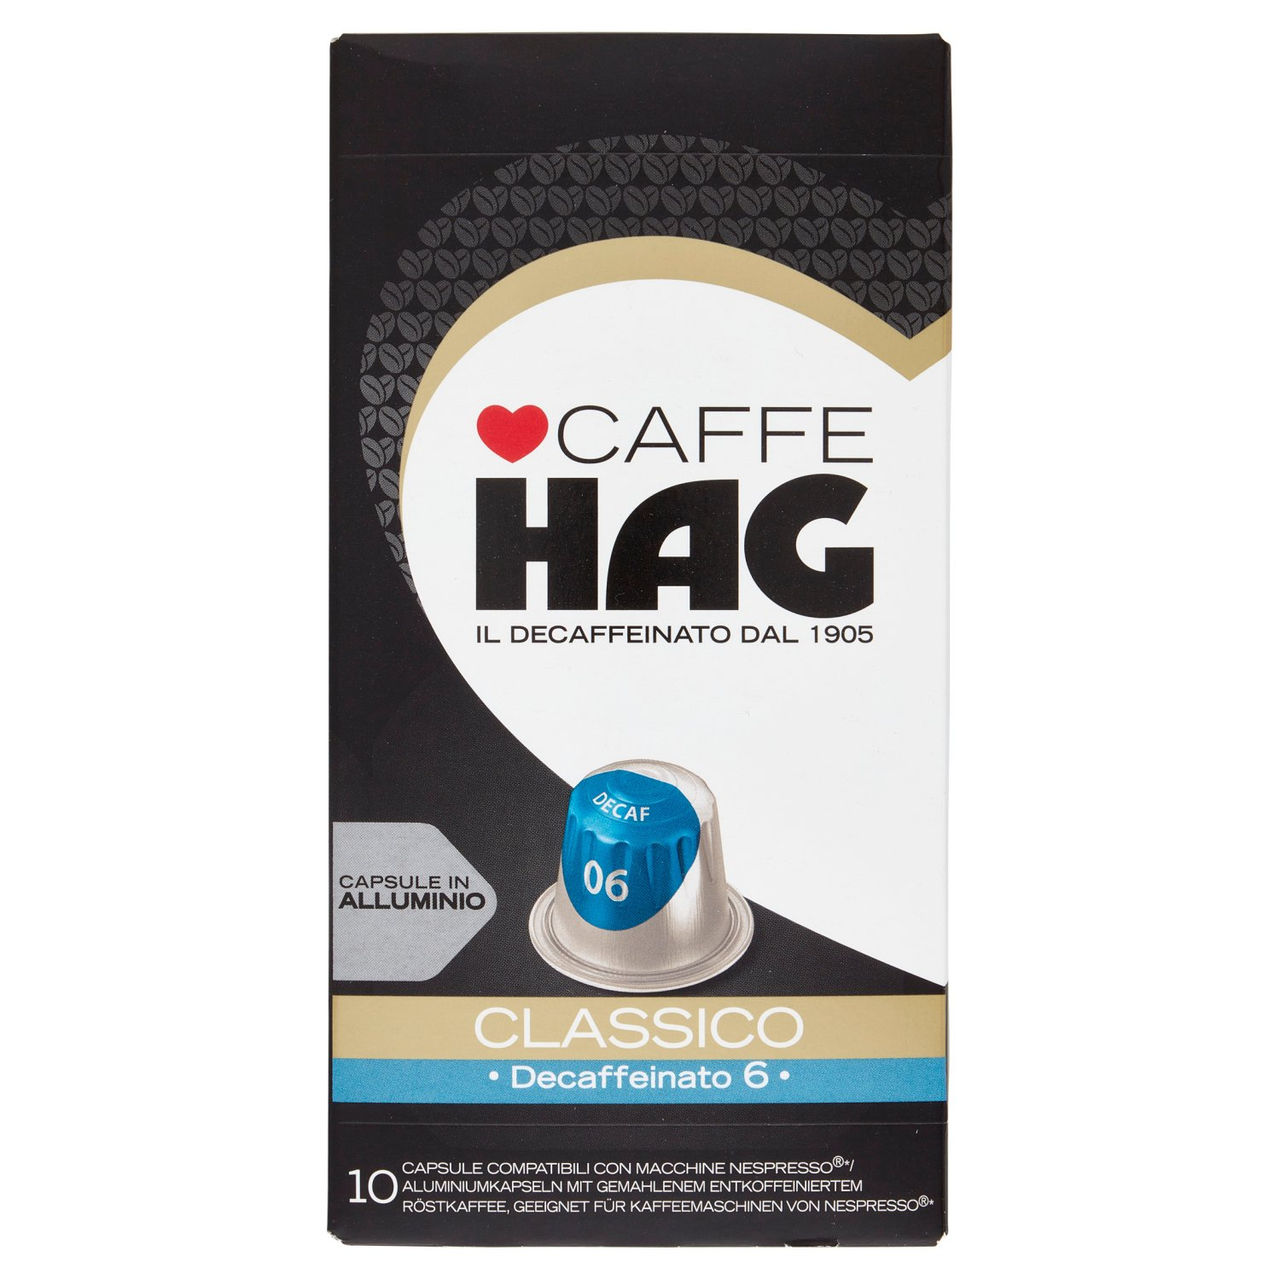 Caffè HAG Classico Decaffeinato, 10 Capsule, 52 g, Intensità 6